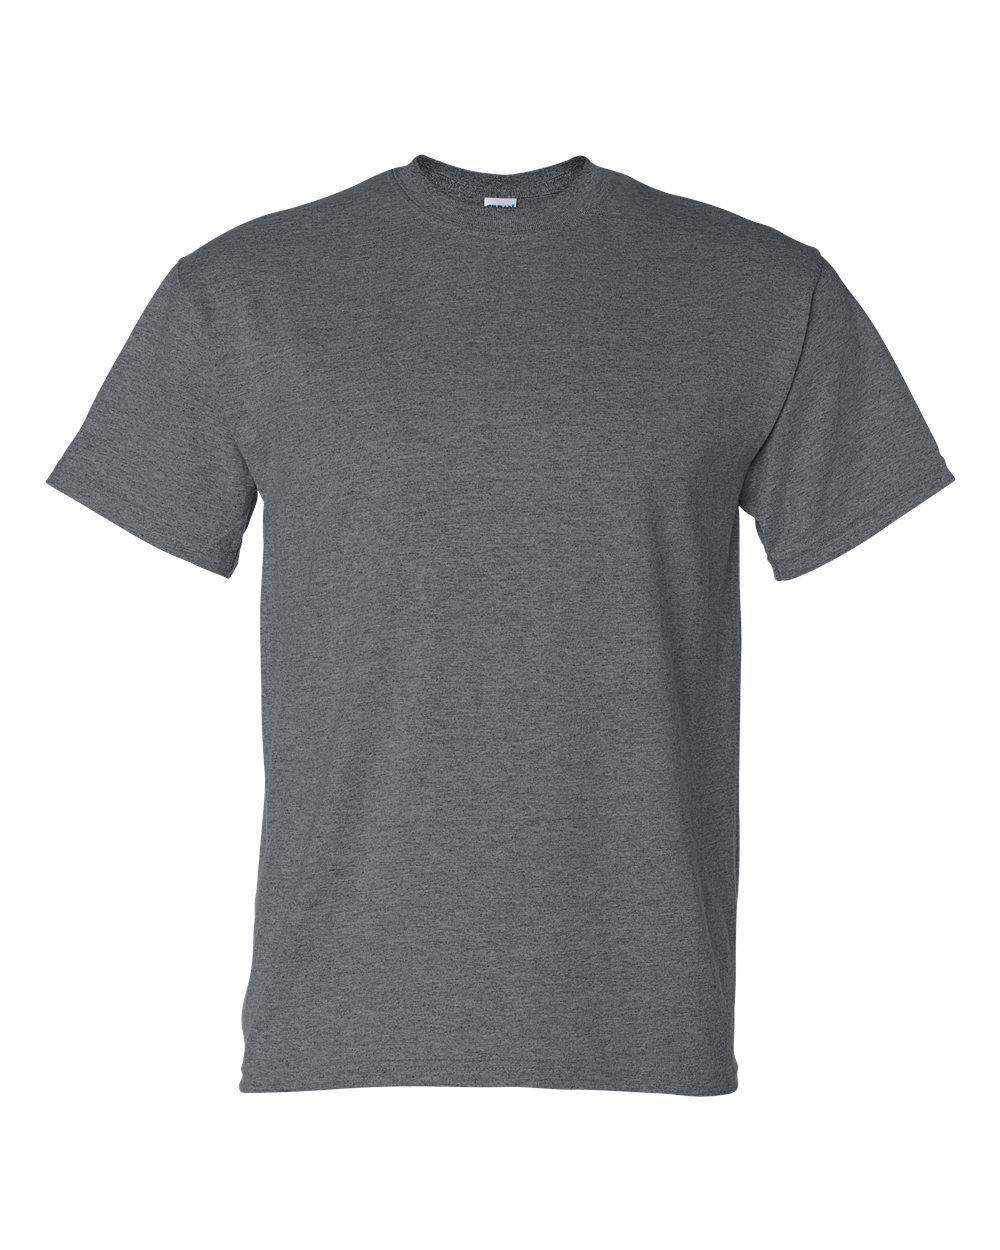 DryBlend Short-Sleeve T-Shirt